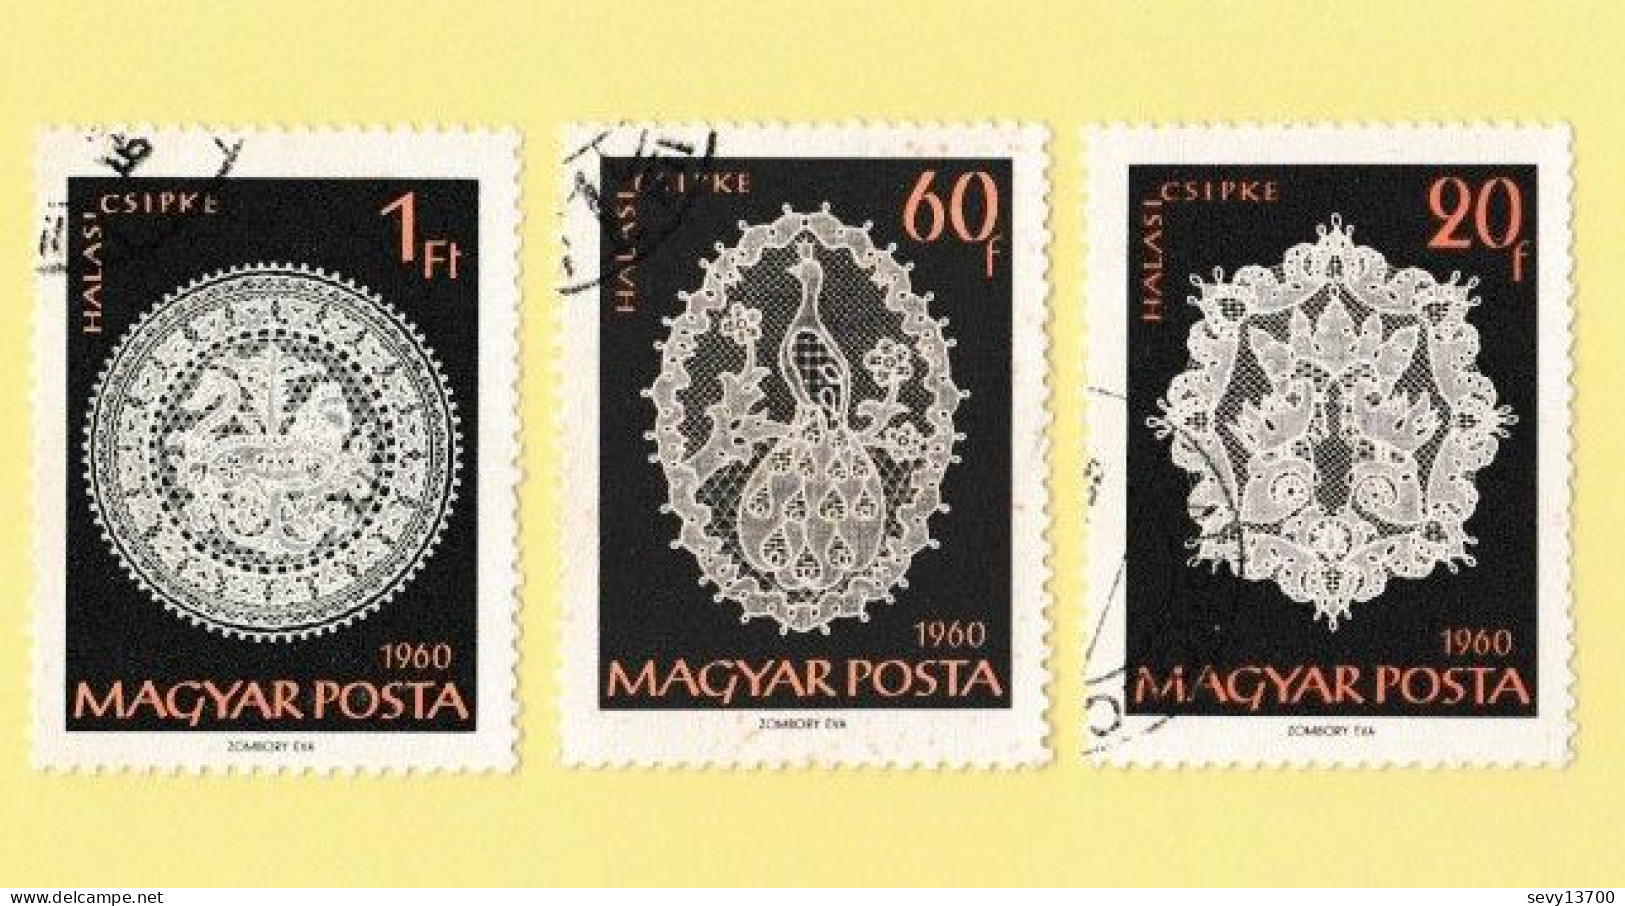 Hongrie - Magyar Posta - lot de 36 timbres le travail, l'artisanat, les moissons, la faïence et la dentelle